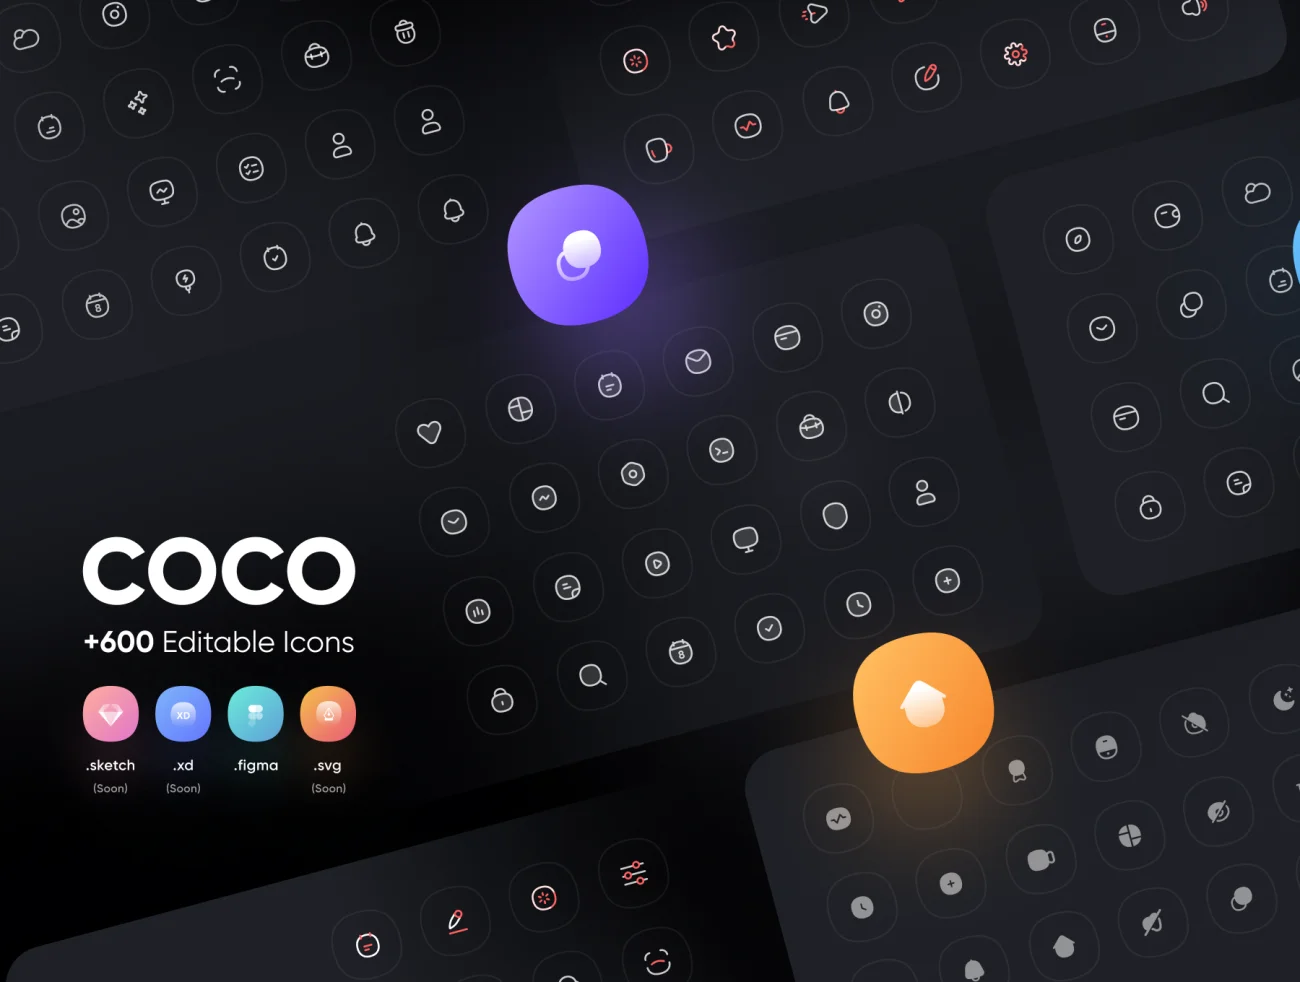 300款方便编辑的圆角常用必备图标库 COCO icon pack +600 Editable icons插图1